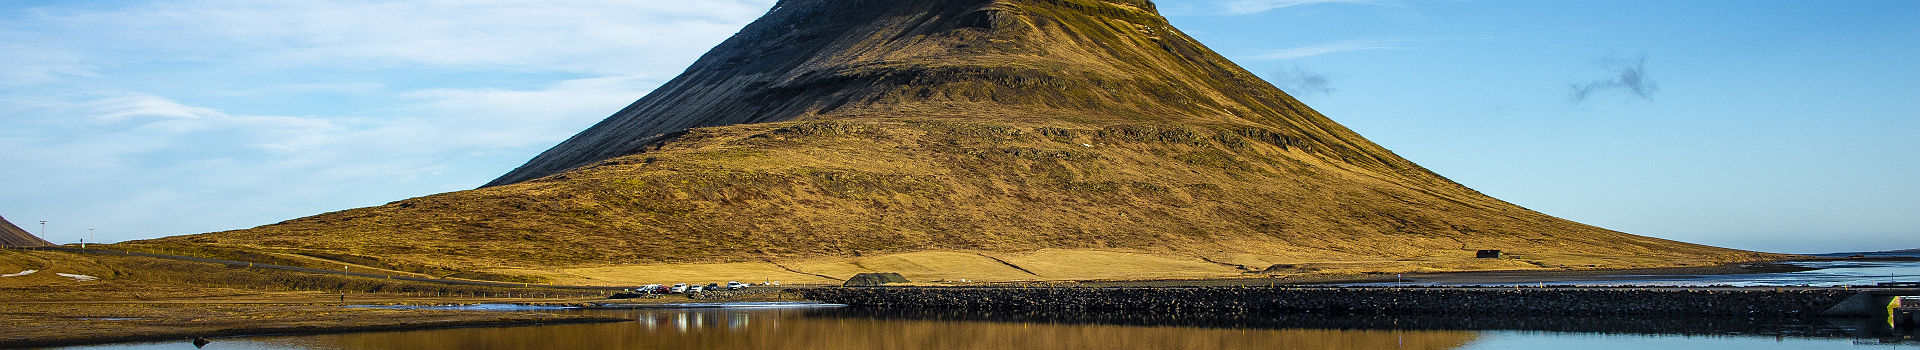 Montagne Kirkjufell, près de Grundafjordur - Islande